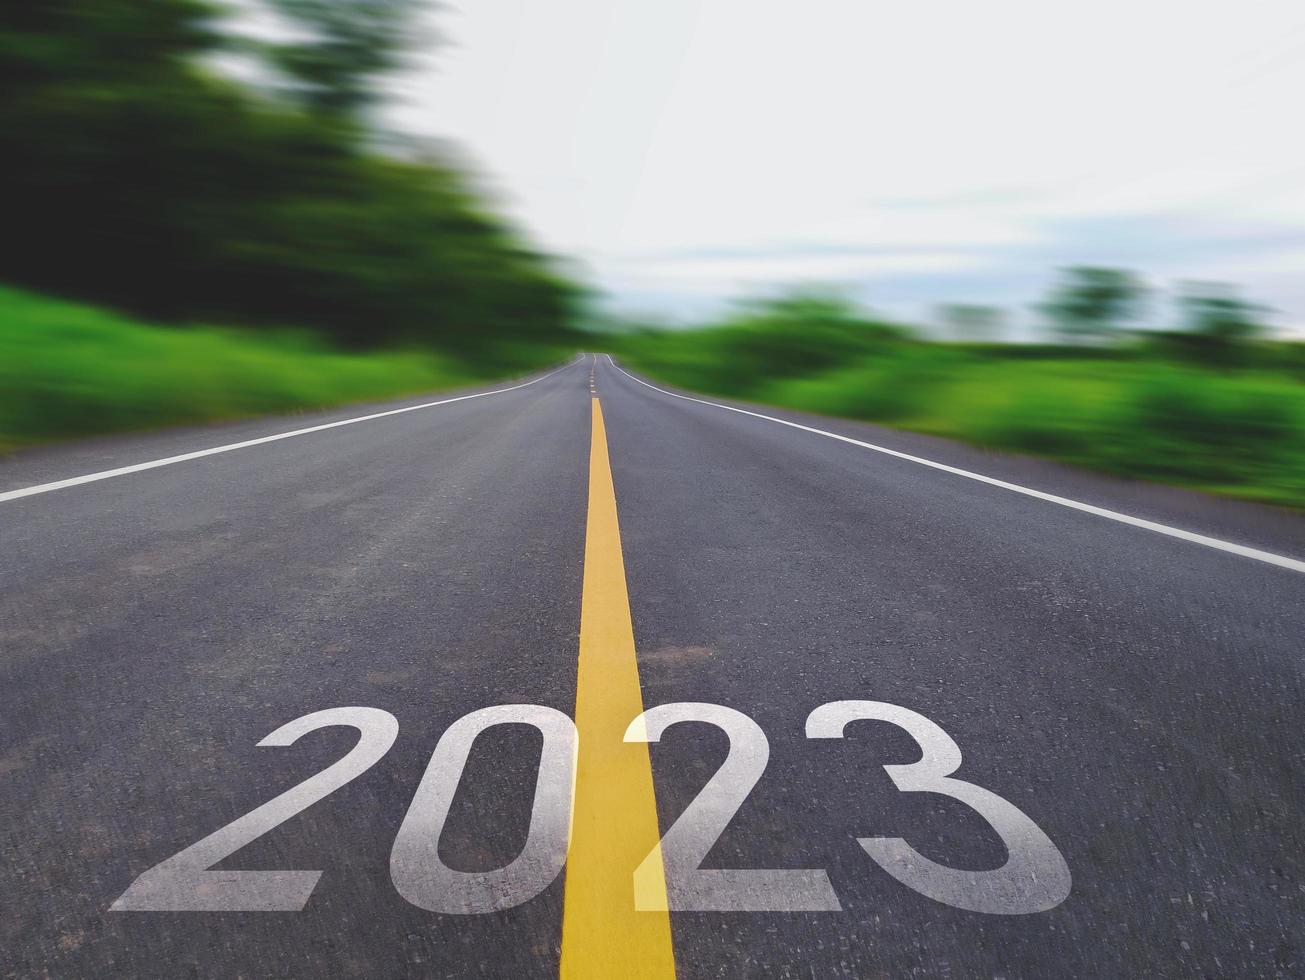 conceito de ano novo e nova estrada com a palavra 2022 a 2023 escrita na estrada de asfalto em bela estrada rural com campos de grama verde em ambos os lados conceito para o ano novo ou visão de 2023 foto